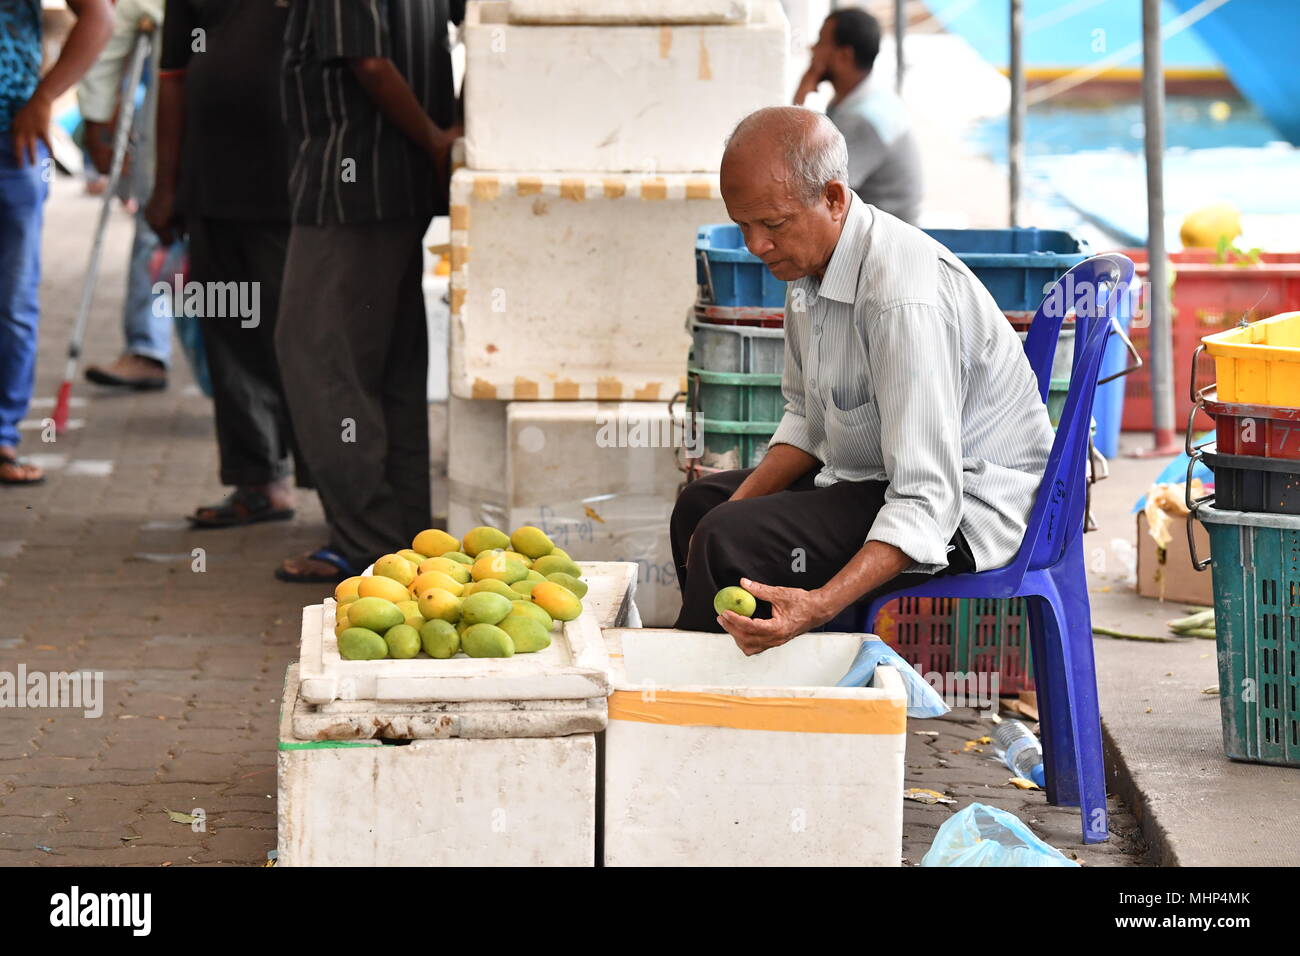 Maschio, Maldive - Marzo 4 2017 - persone che acquistano frutta e vegatbles al mercato dell'isola Foto Stock